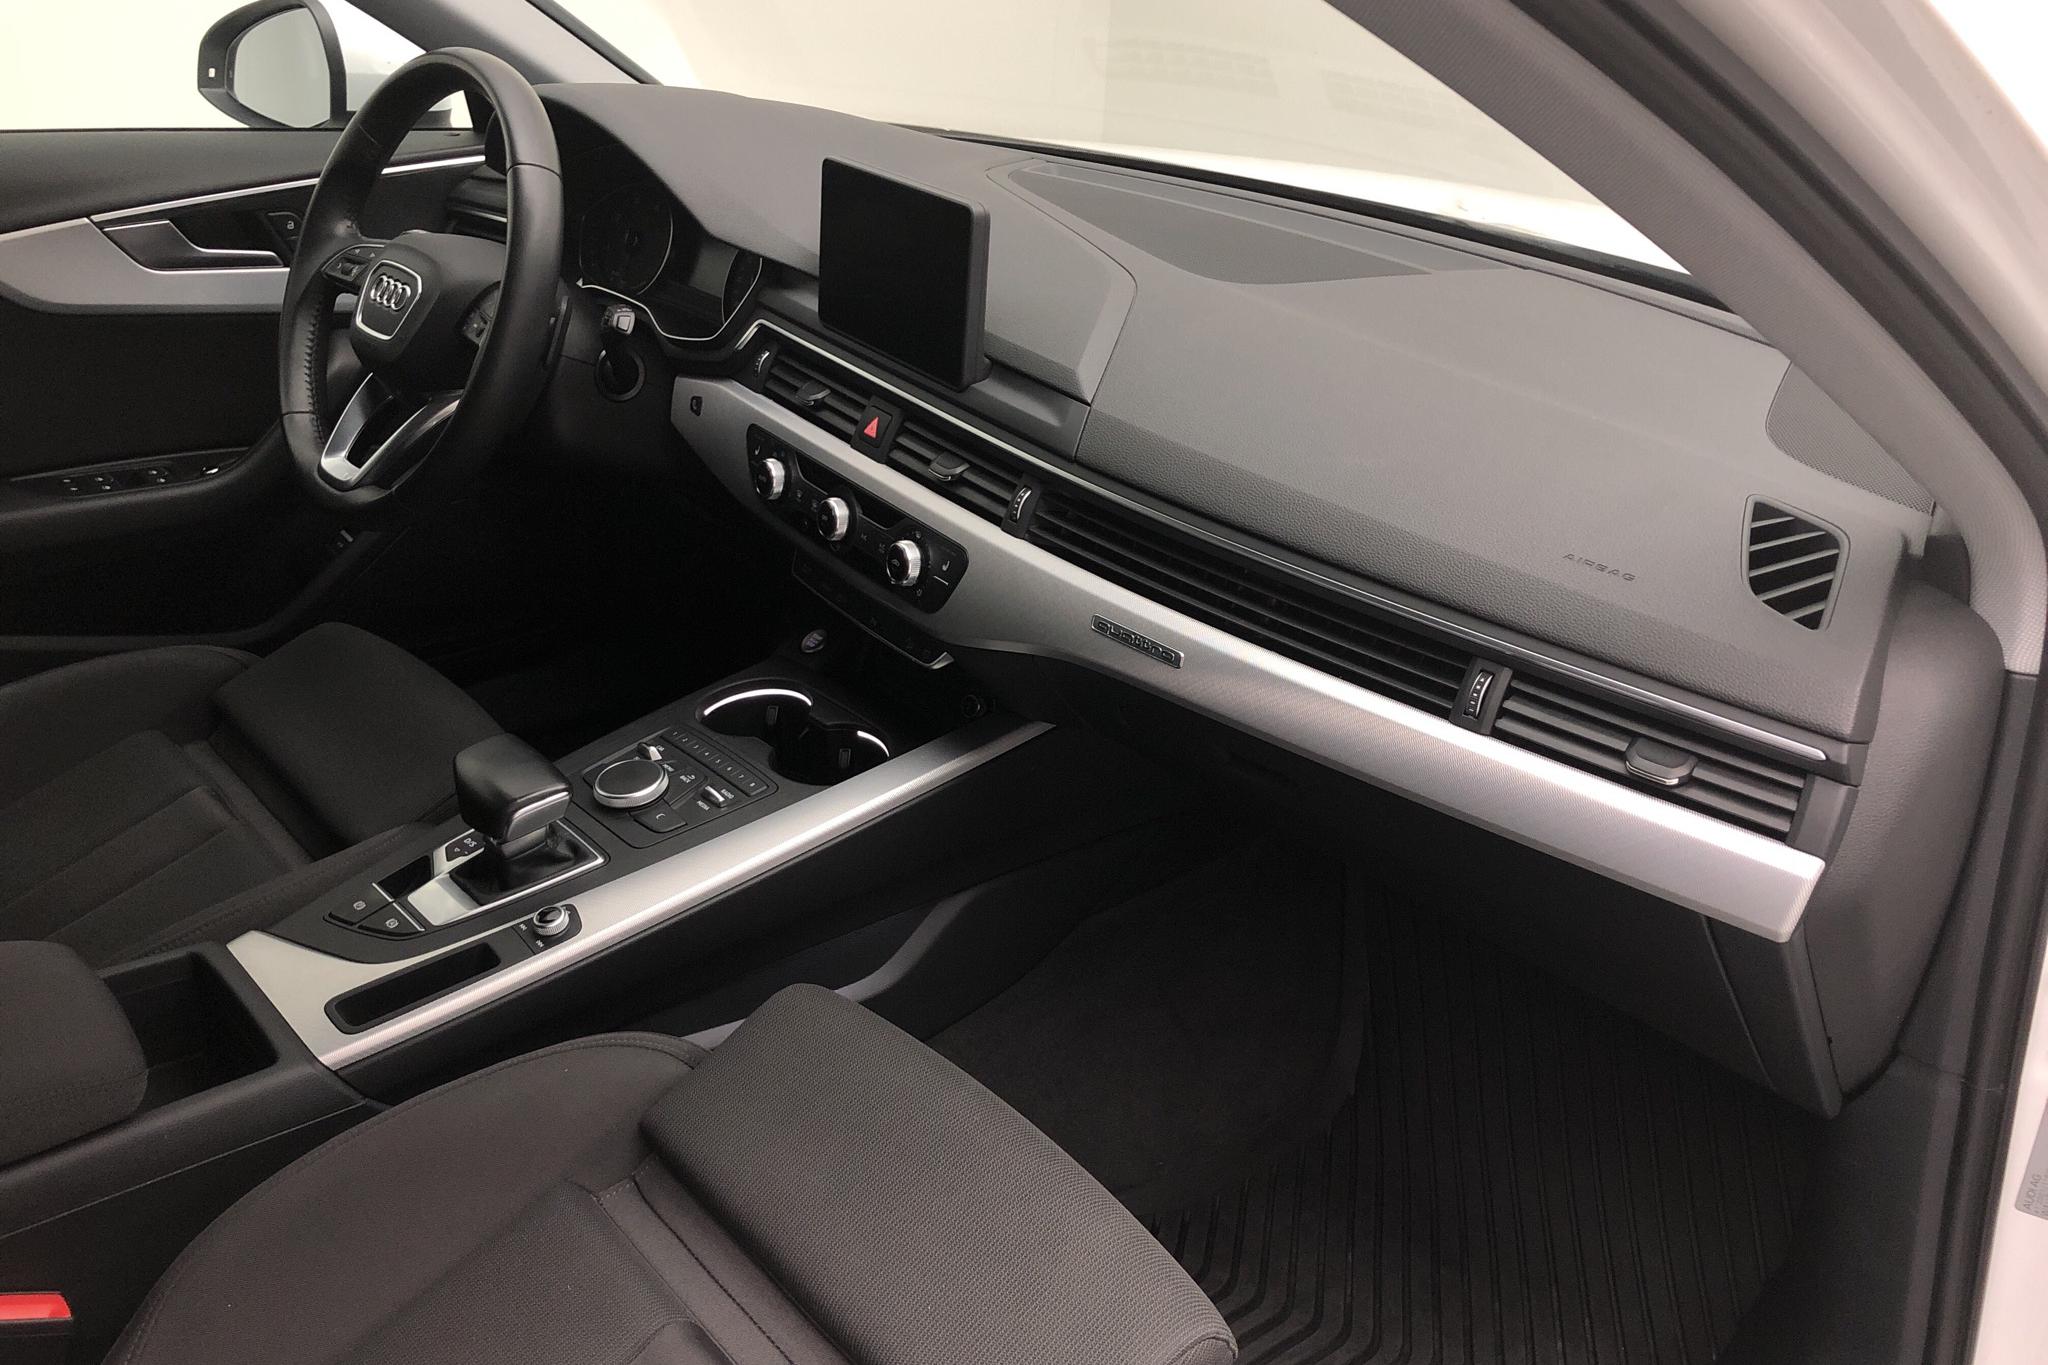 Audi A4 Allroad 2.0 TDI quattro (190hk) - 64 850 km - Automatic - white - 2018